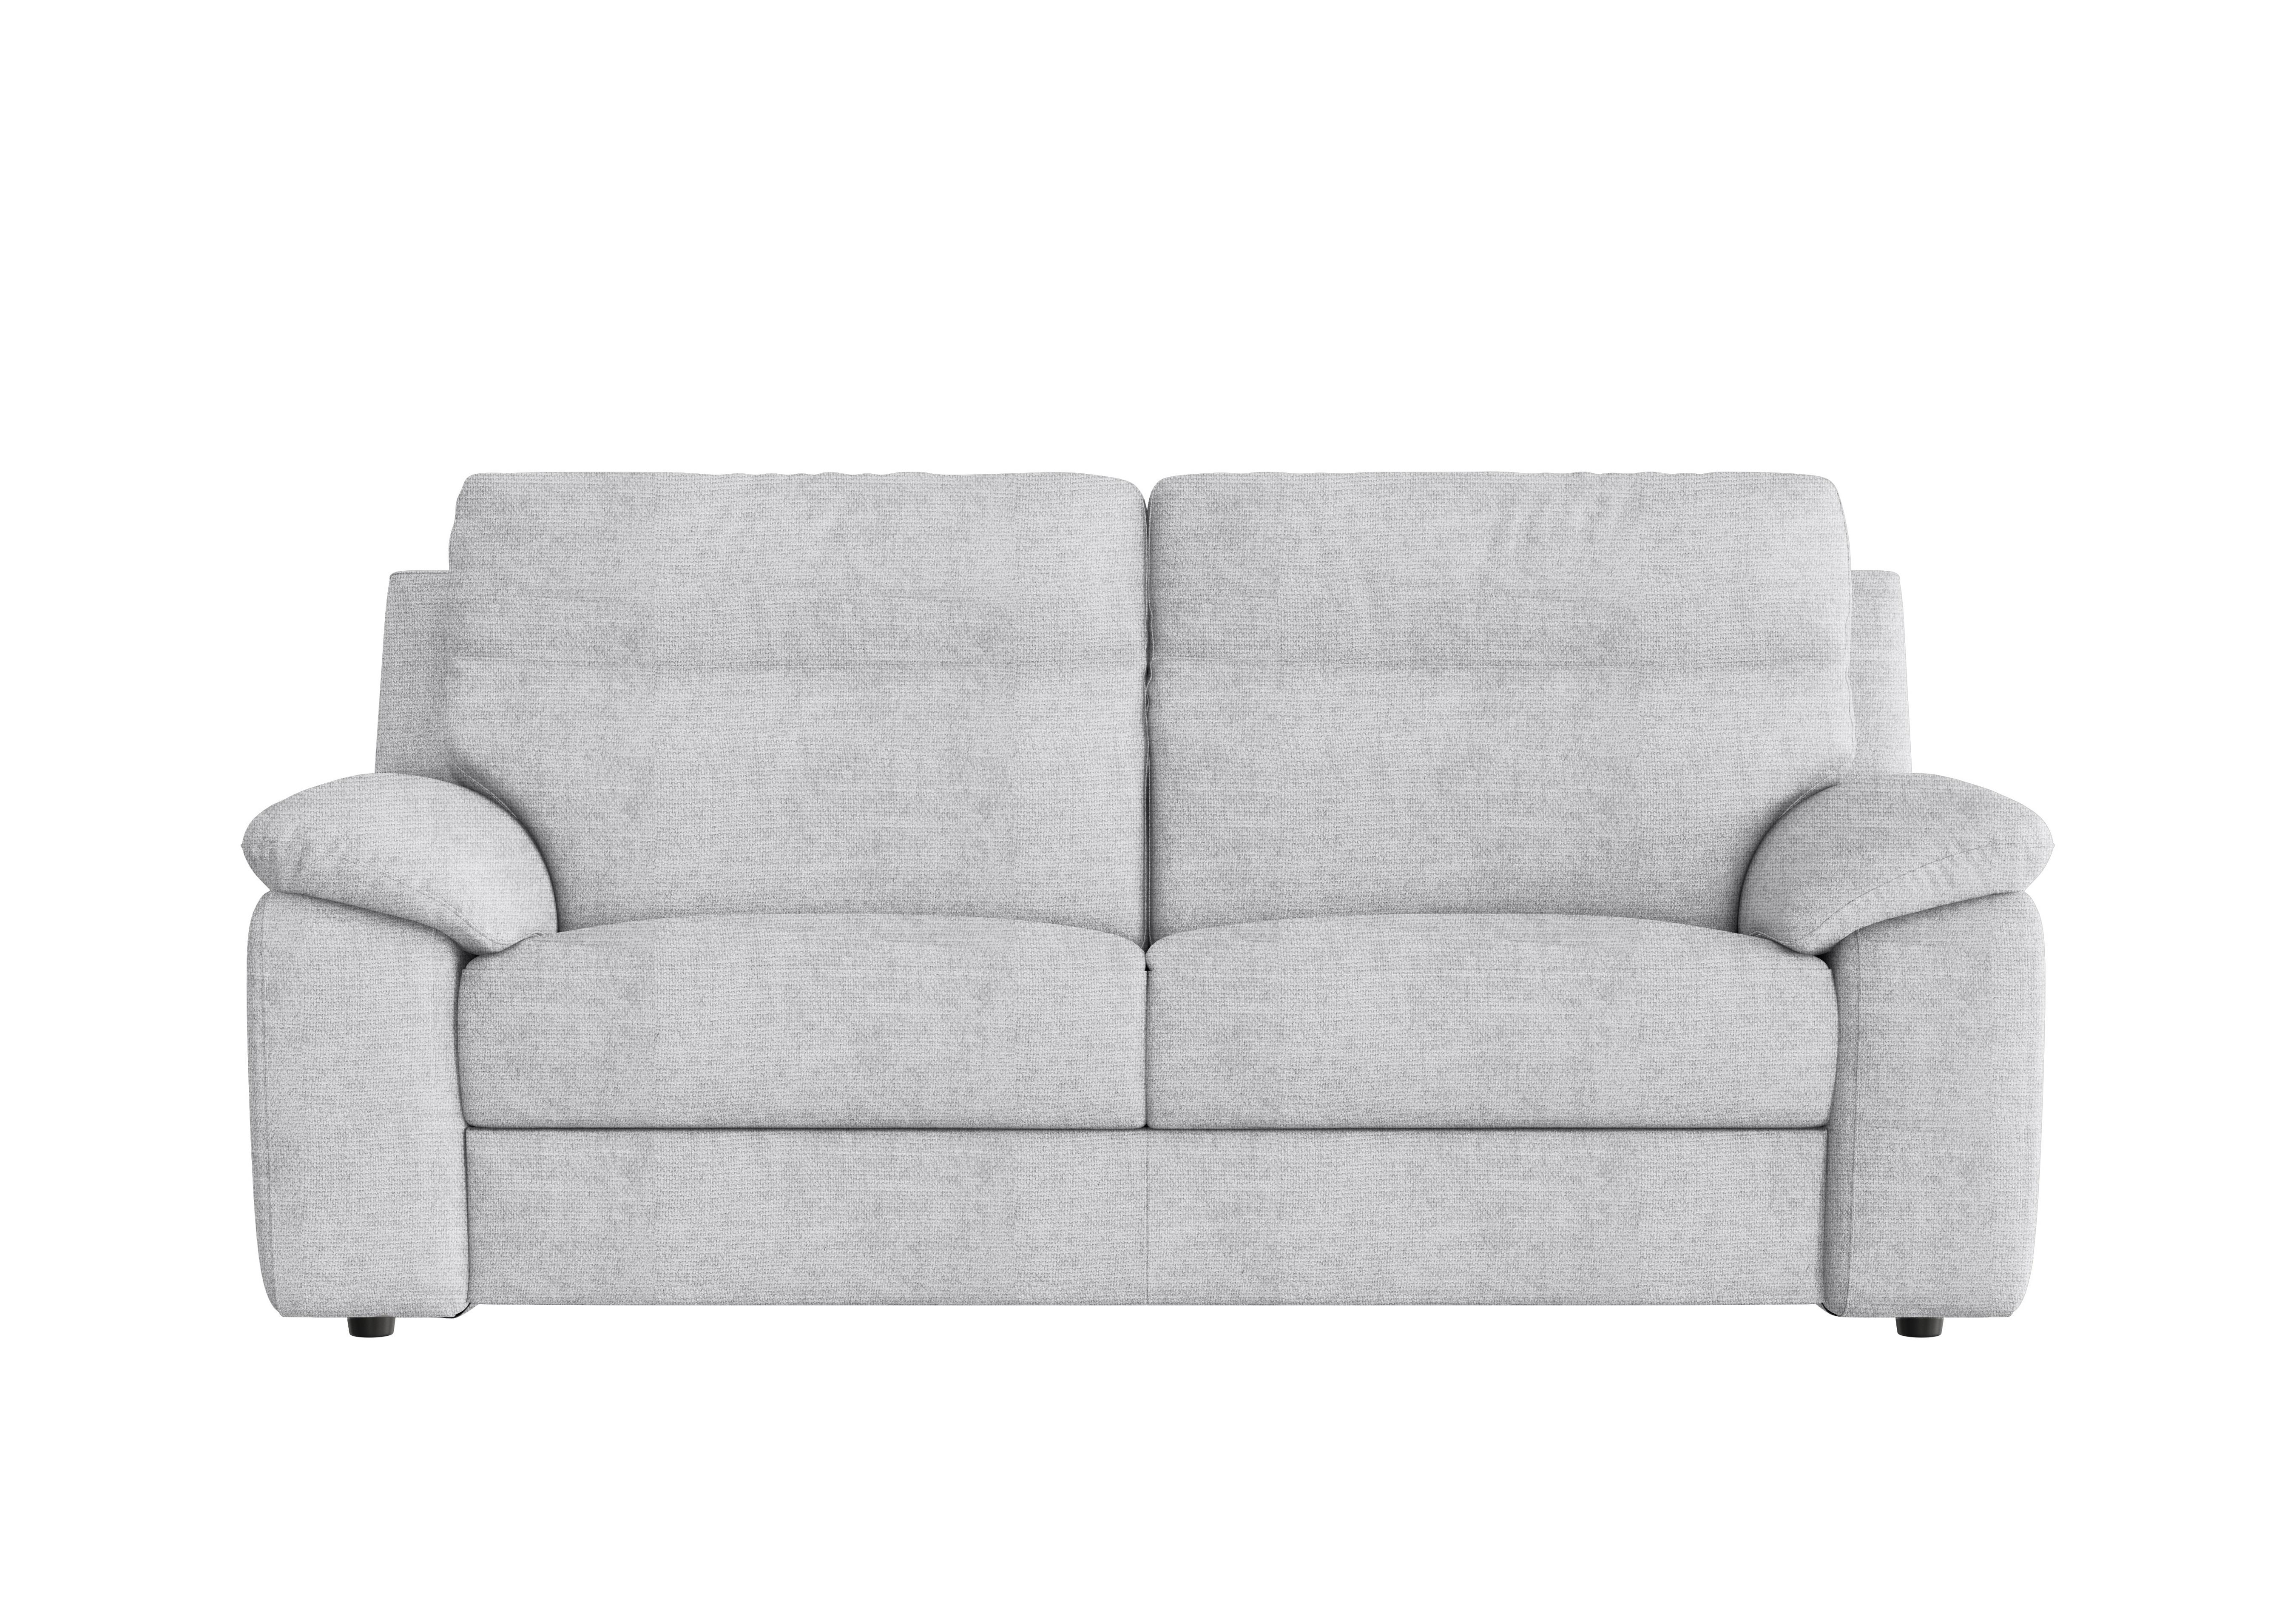 Pepino 3 Seater Fabric Sofa in Baobab Ghiaccio 516 on Furniture Village